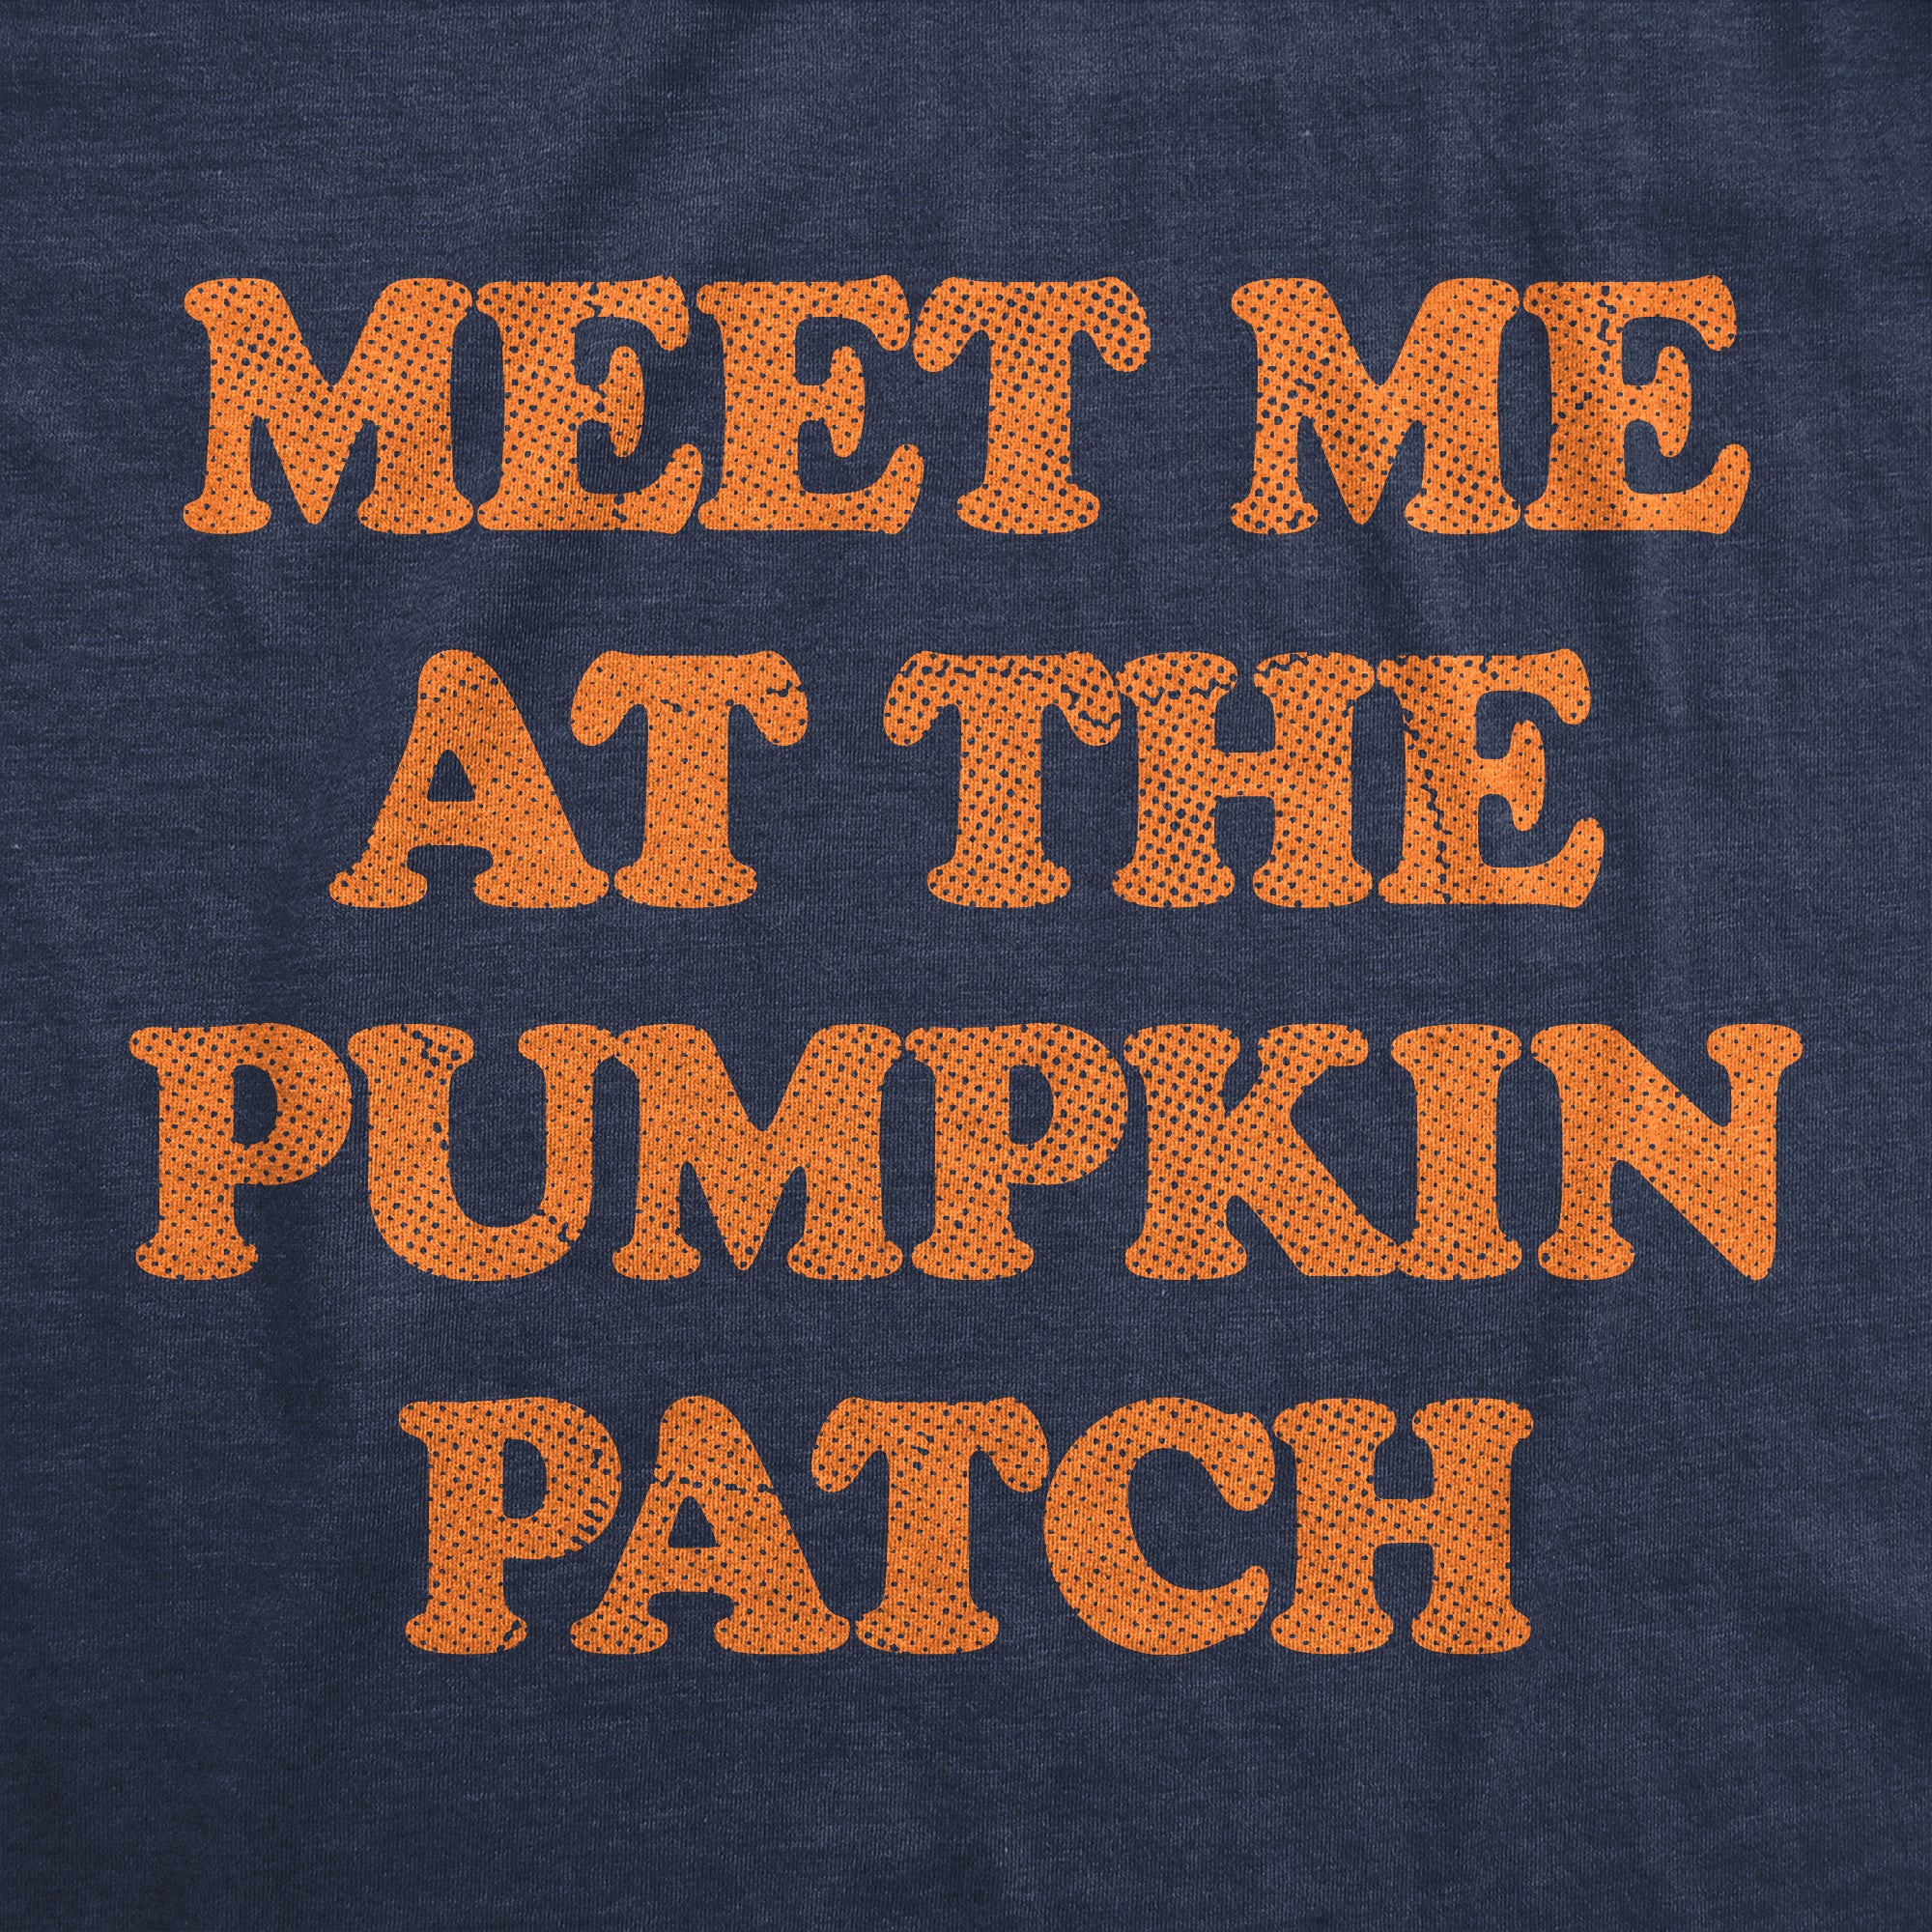 Funny Heather Navy - PUMPKIN Meet Me At The Pumpkin Patch Womens T Shirt Nerdy Halloween Tee